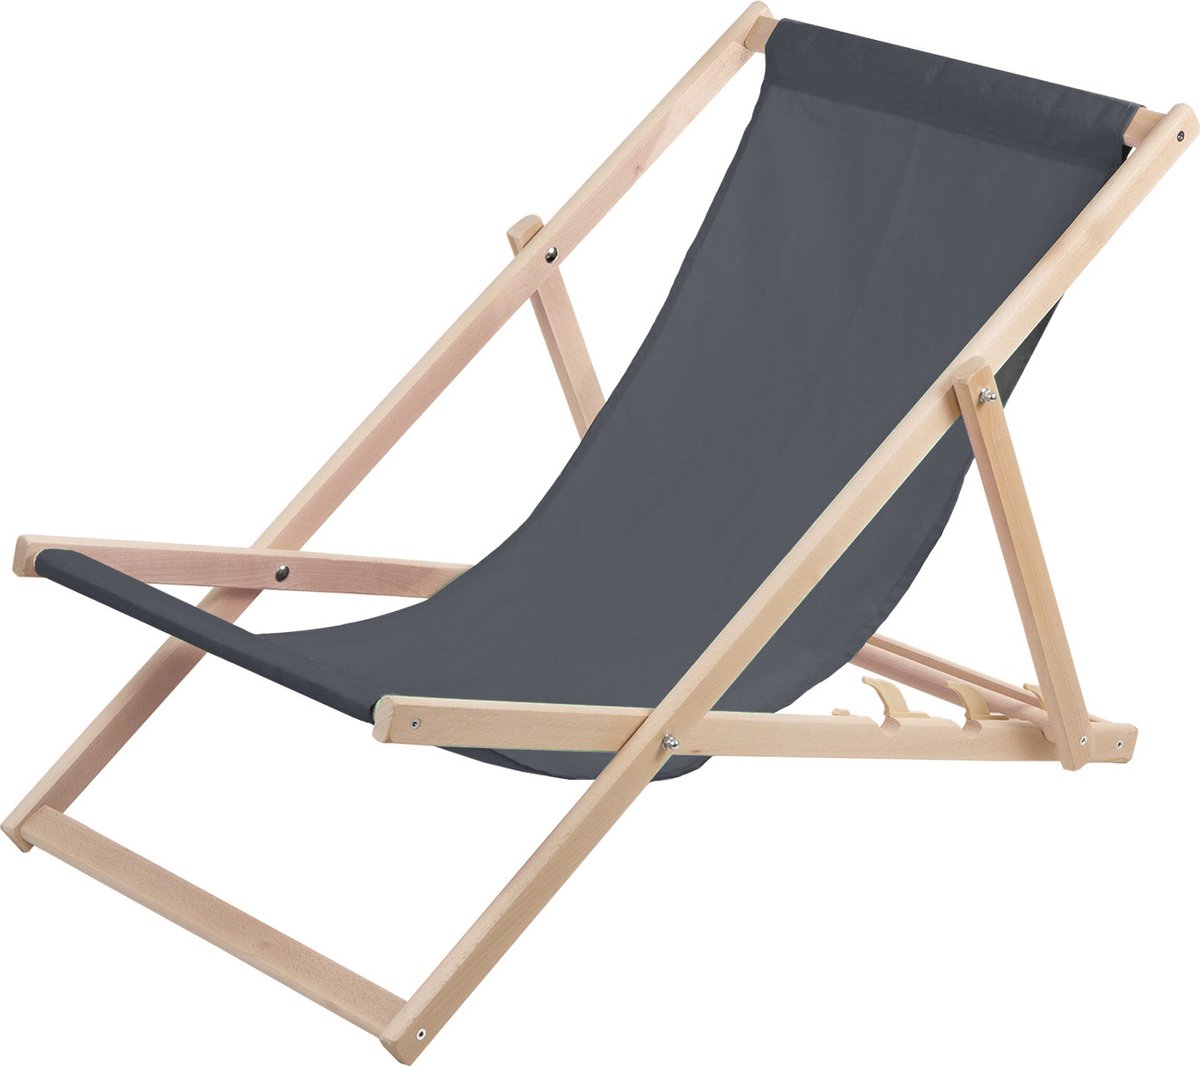 WOODOK - Ligstoel - Comfortabele houten ligstoel in grijs ideaal voor het strand, balkon, terras